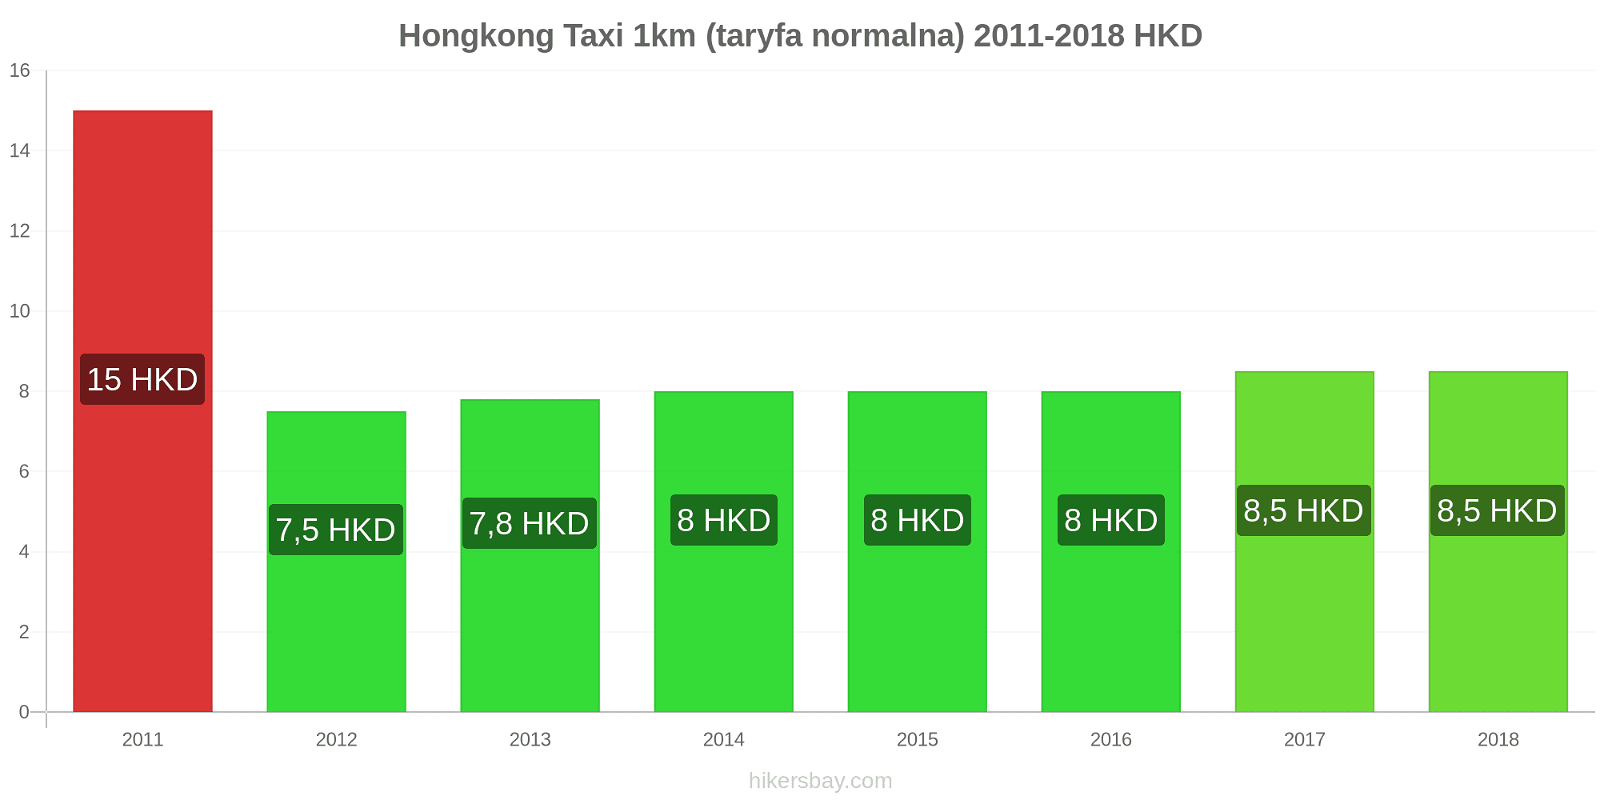 Hongkong zmiany cen Taxi 1km (taryfa normalna) hikersbay.com